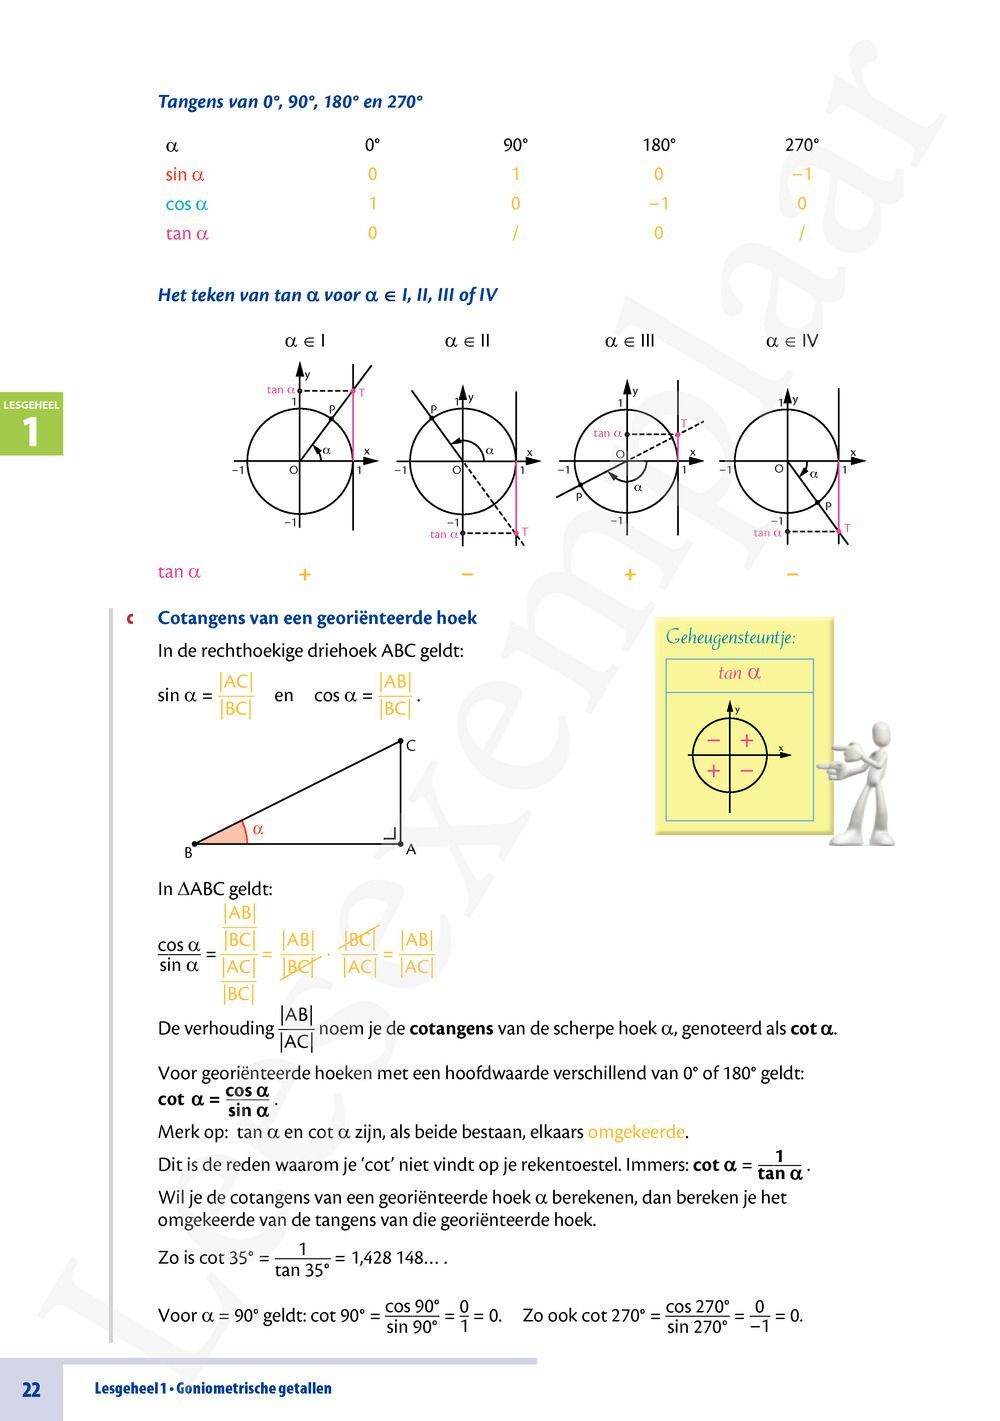 Preview: Matrix Wiskunde 5/6 Goniometrische functies 3 & 4 uur wiskunde Tekstboek (incl. beknopte correctiesleutel en online openleertrajecten)